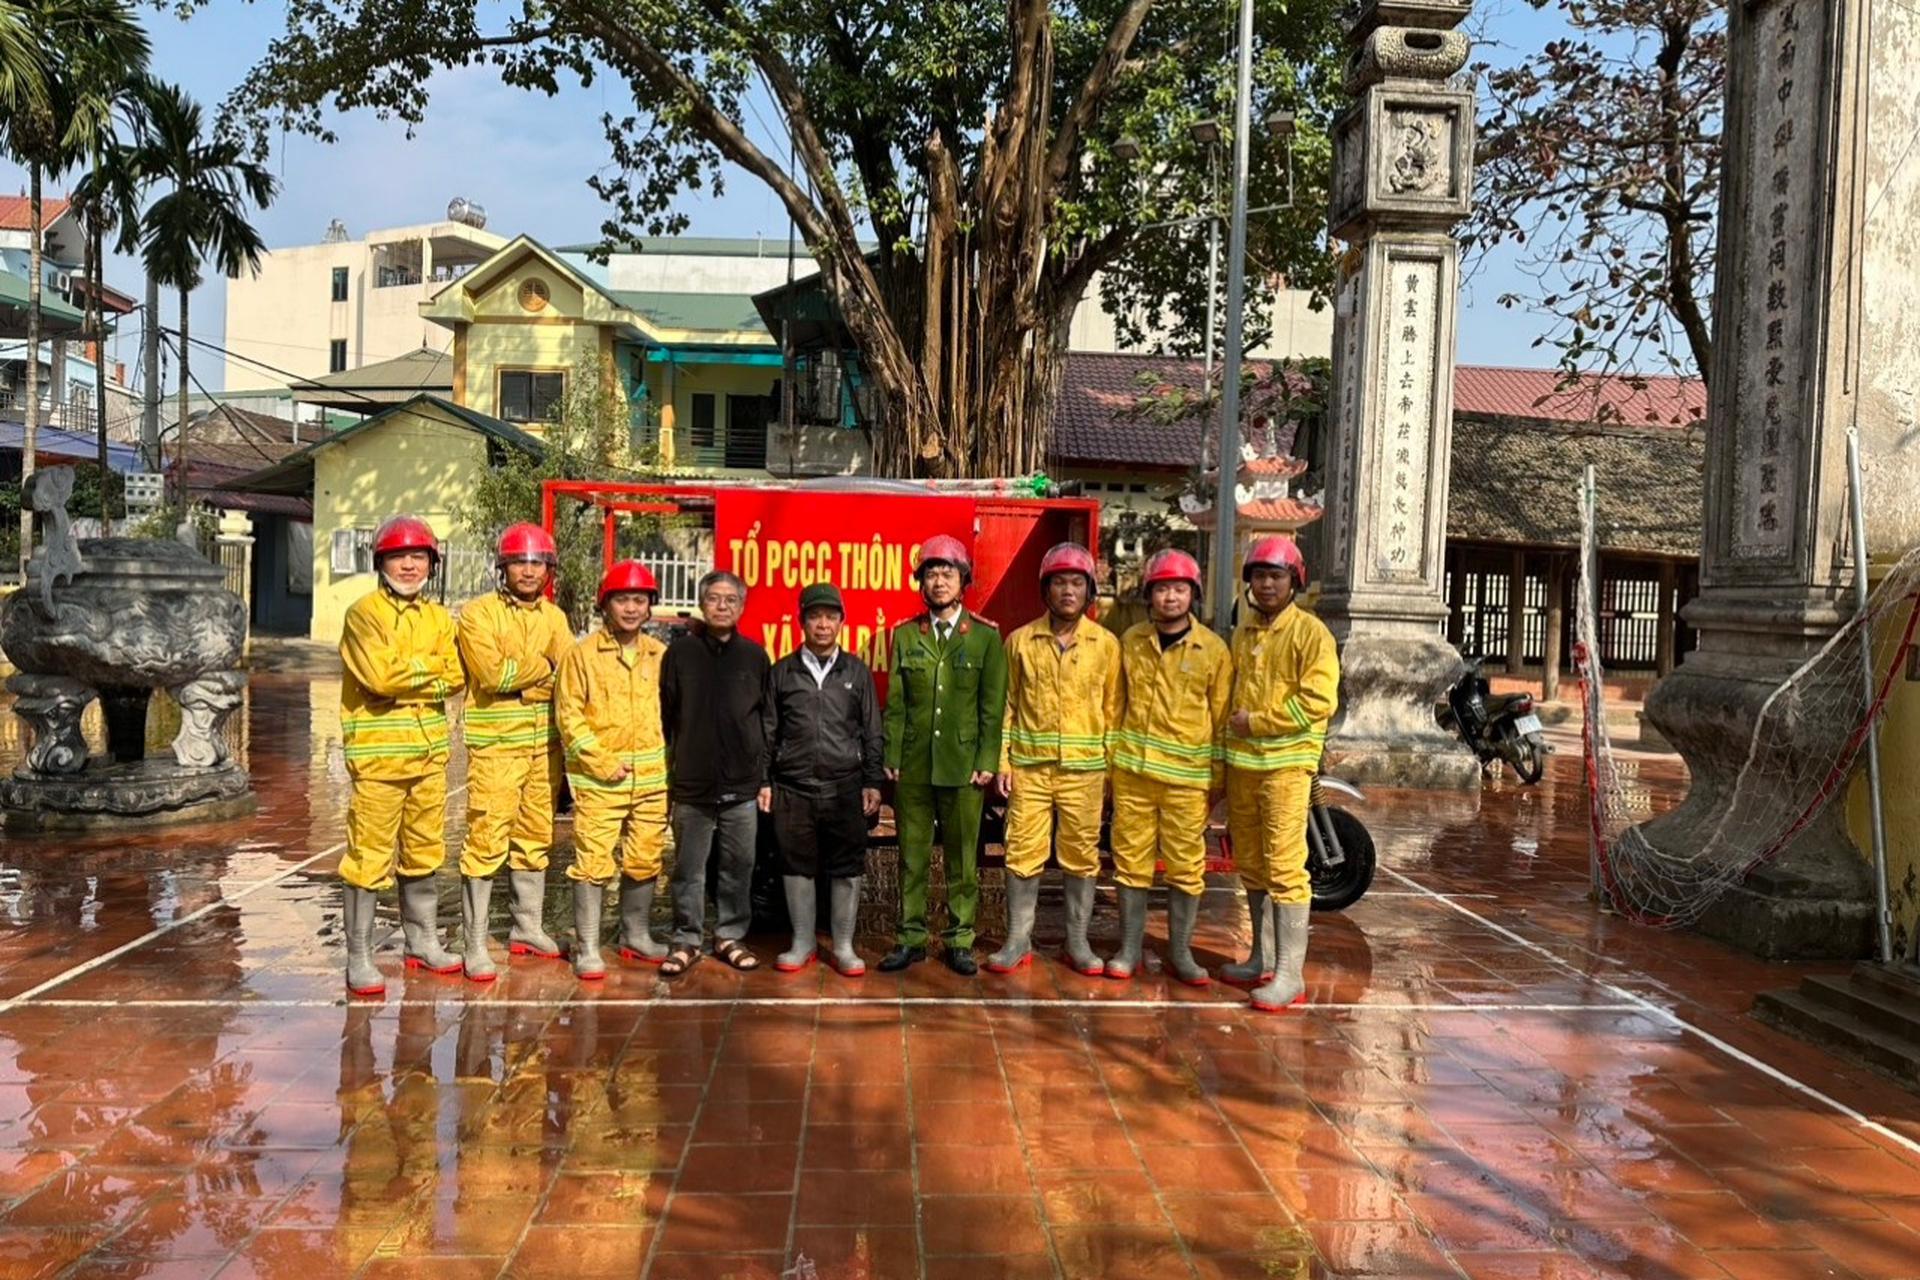 Đội cứu hỏa ba gác ở Hà Nội: Có cháy, anh em tạm gác công việc đi dập lửa - 11